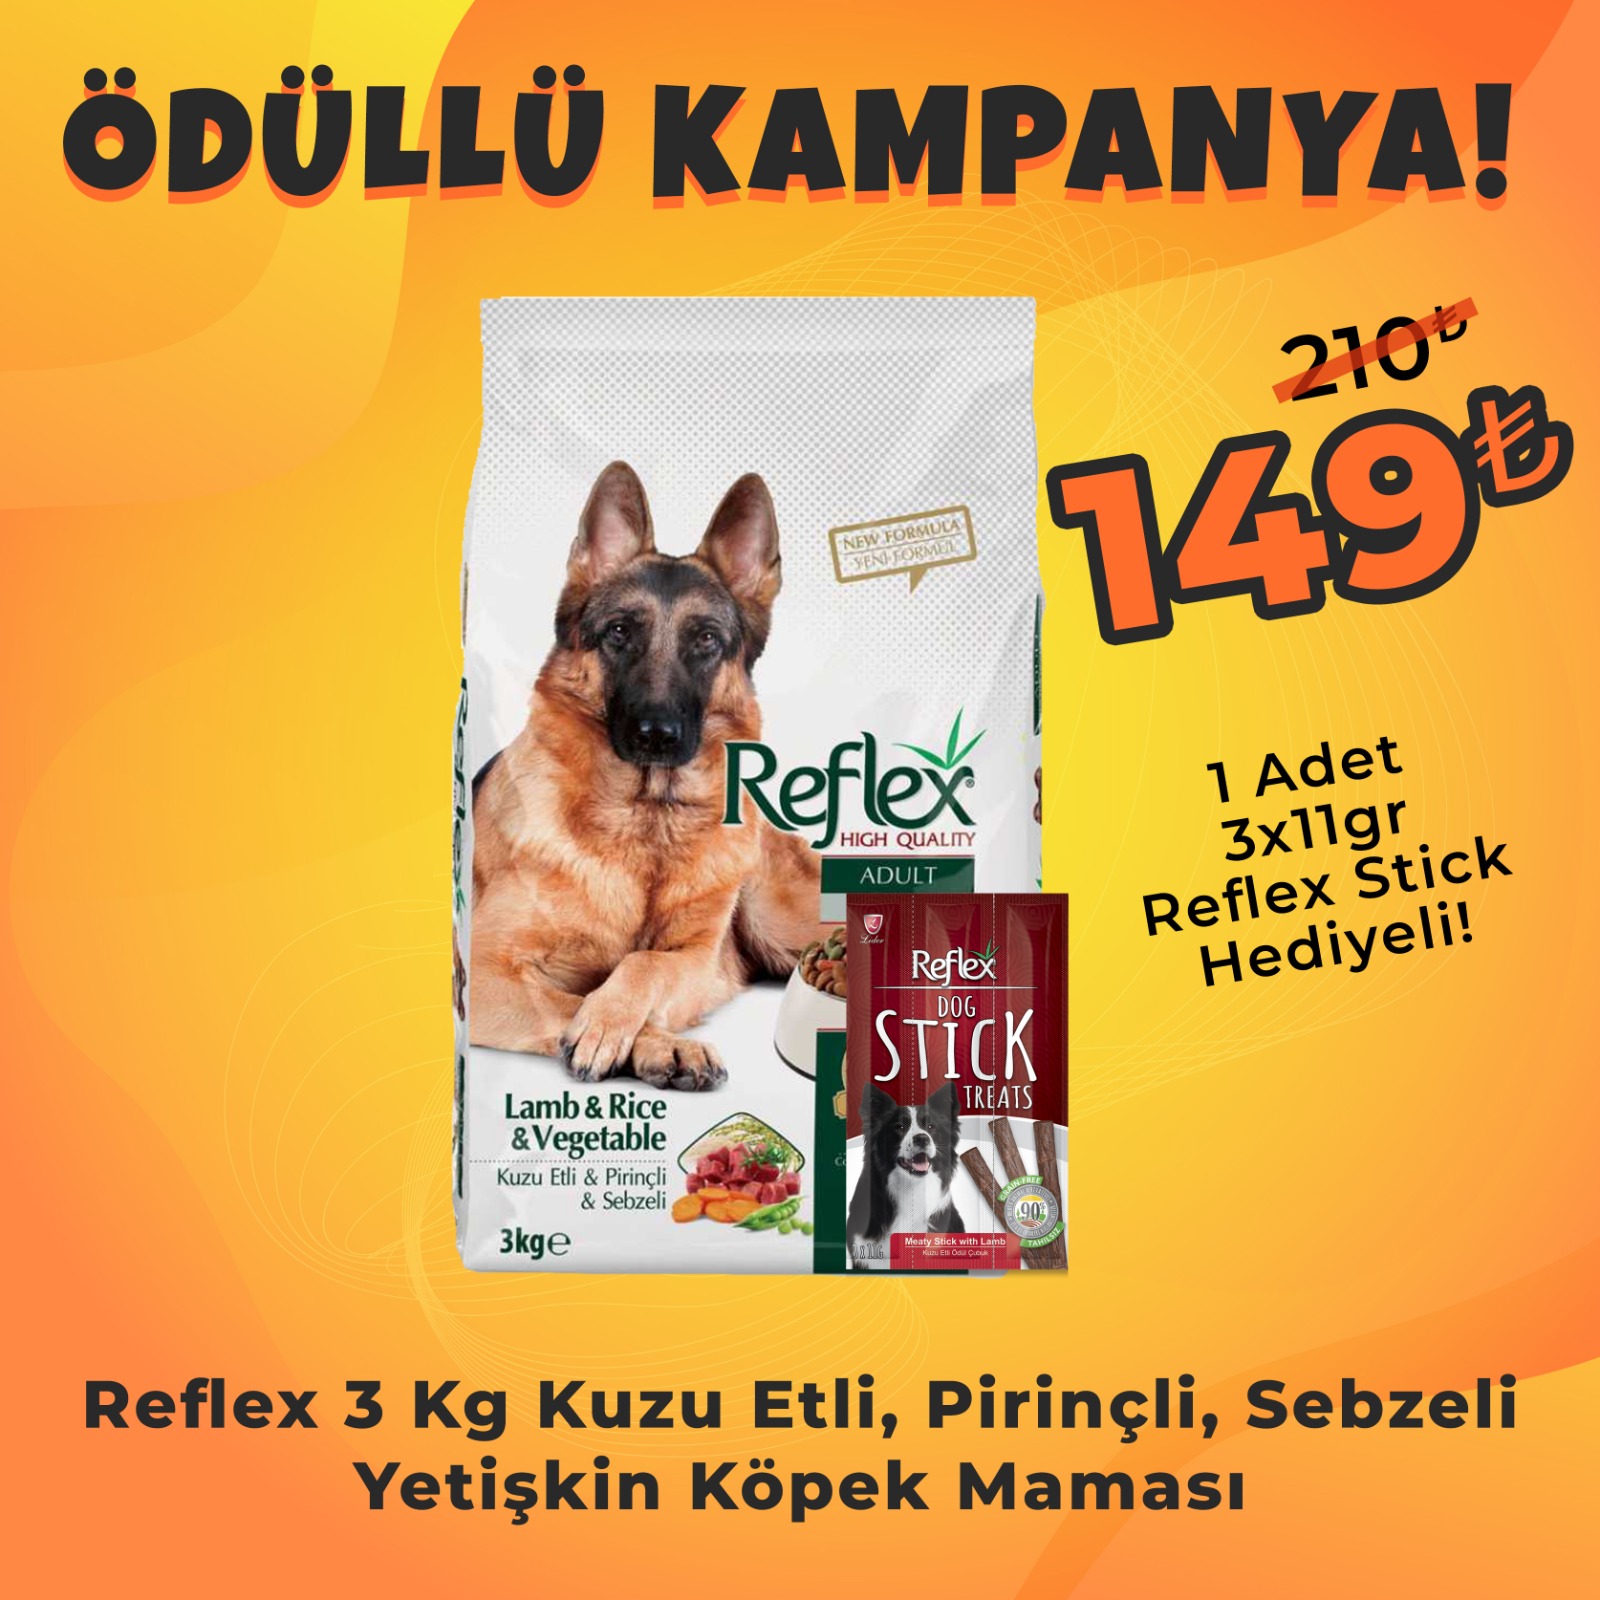 Reflex Kuzulu Pirinçli ve Sebzeli Yetişkin Köpek Maması 3kg + Reflex Köpek Stick Ödül Hediyeli 3x11 Gr